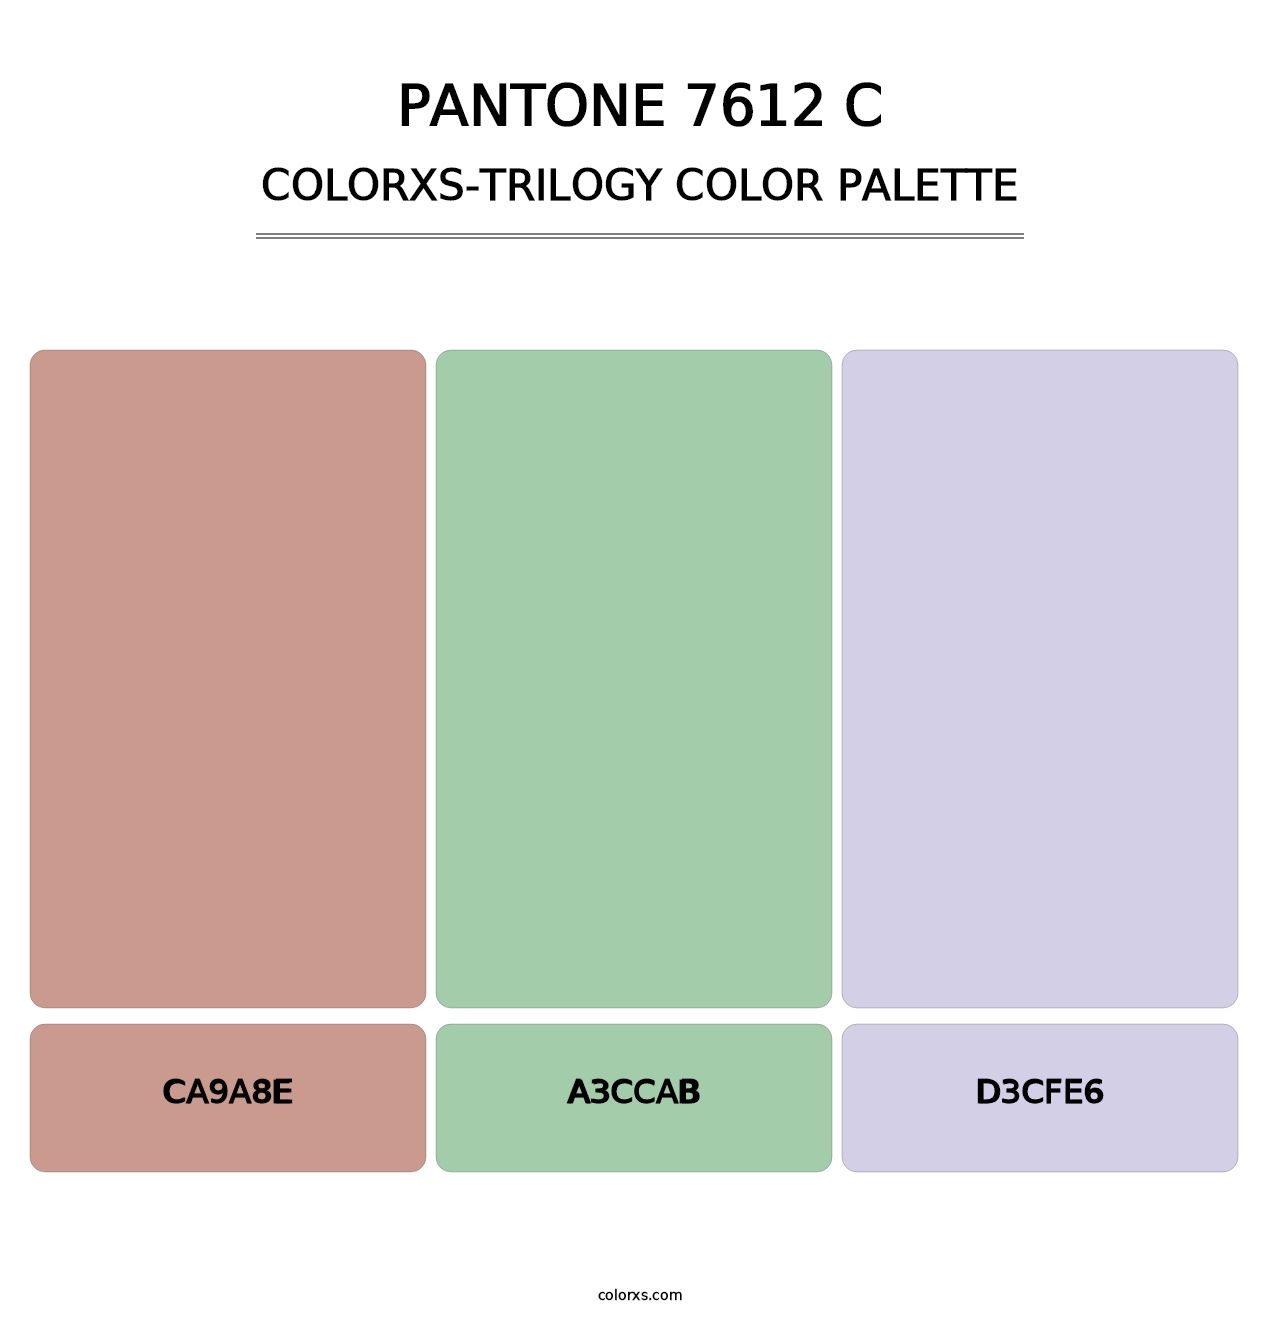 PANTONE 7612 C - Colorxs Trilogy Palette